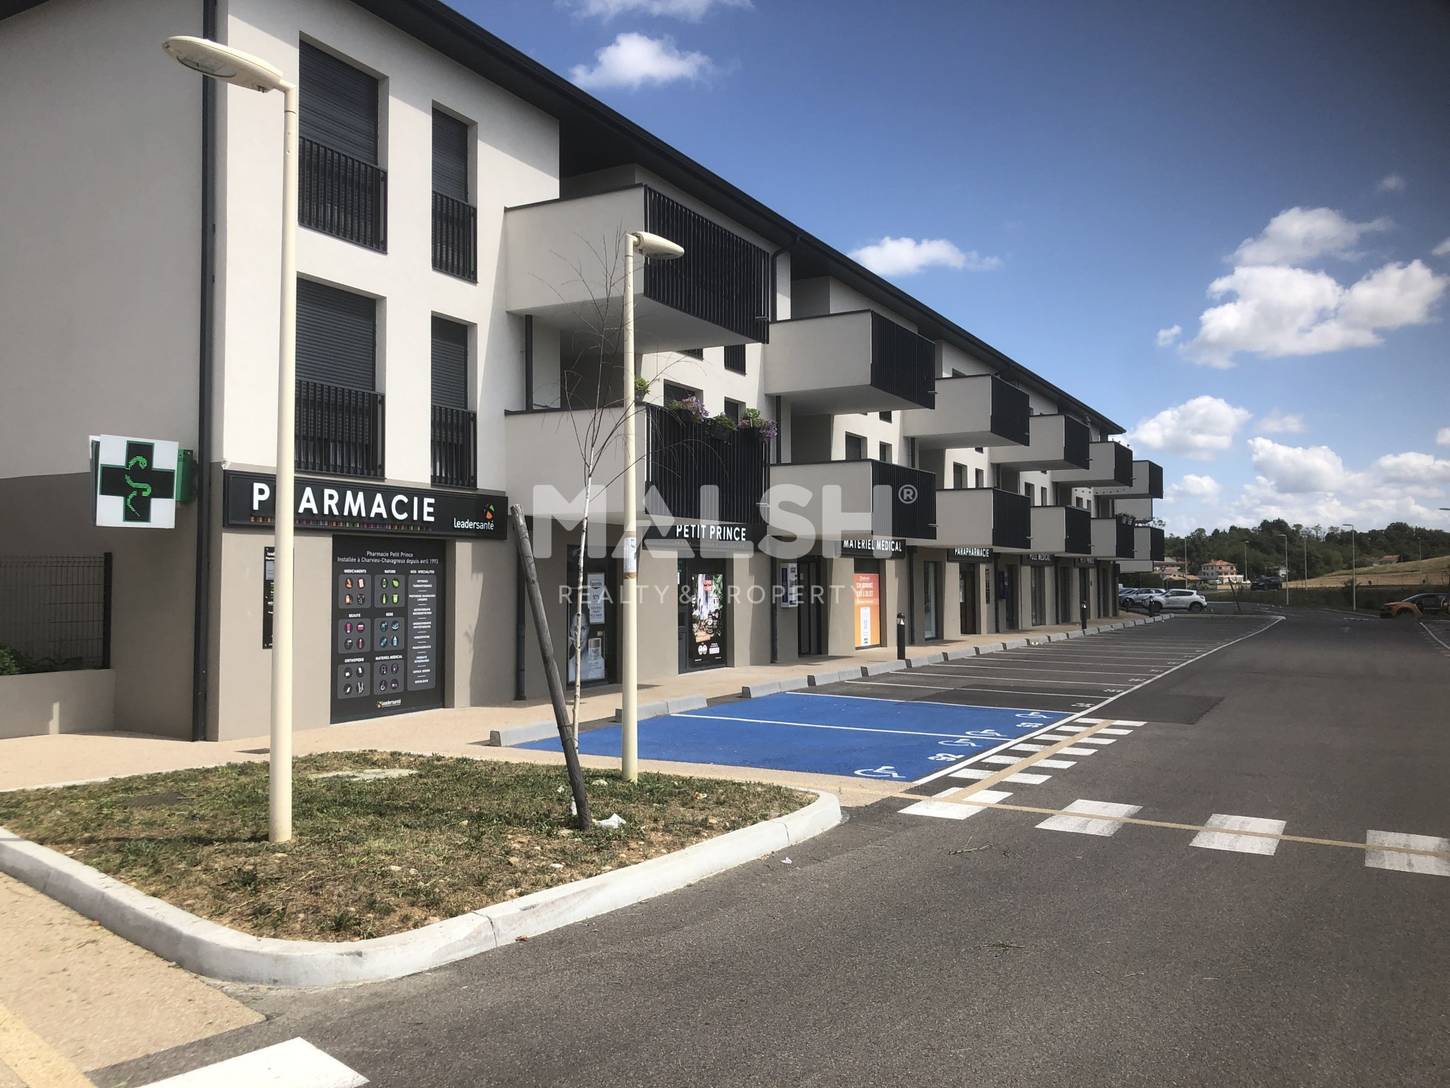 MALSH Realty & Property - Bureaux - Nord Isère ( Ile d'Abeau / St Quentin Falavier ) - Charvieu-Chavagneux - MD_